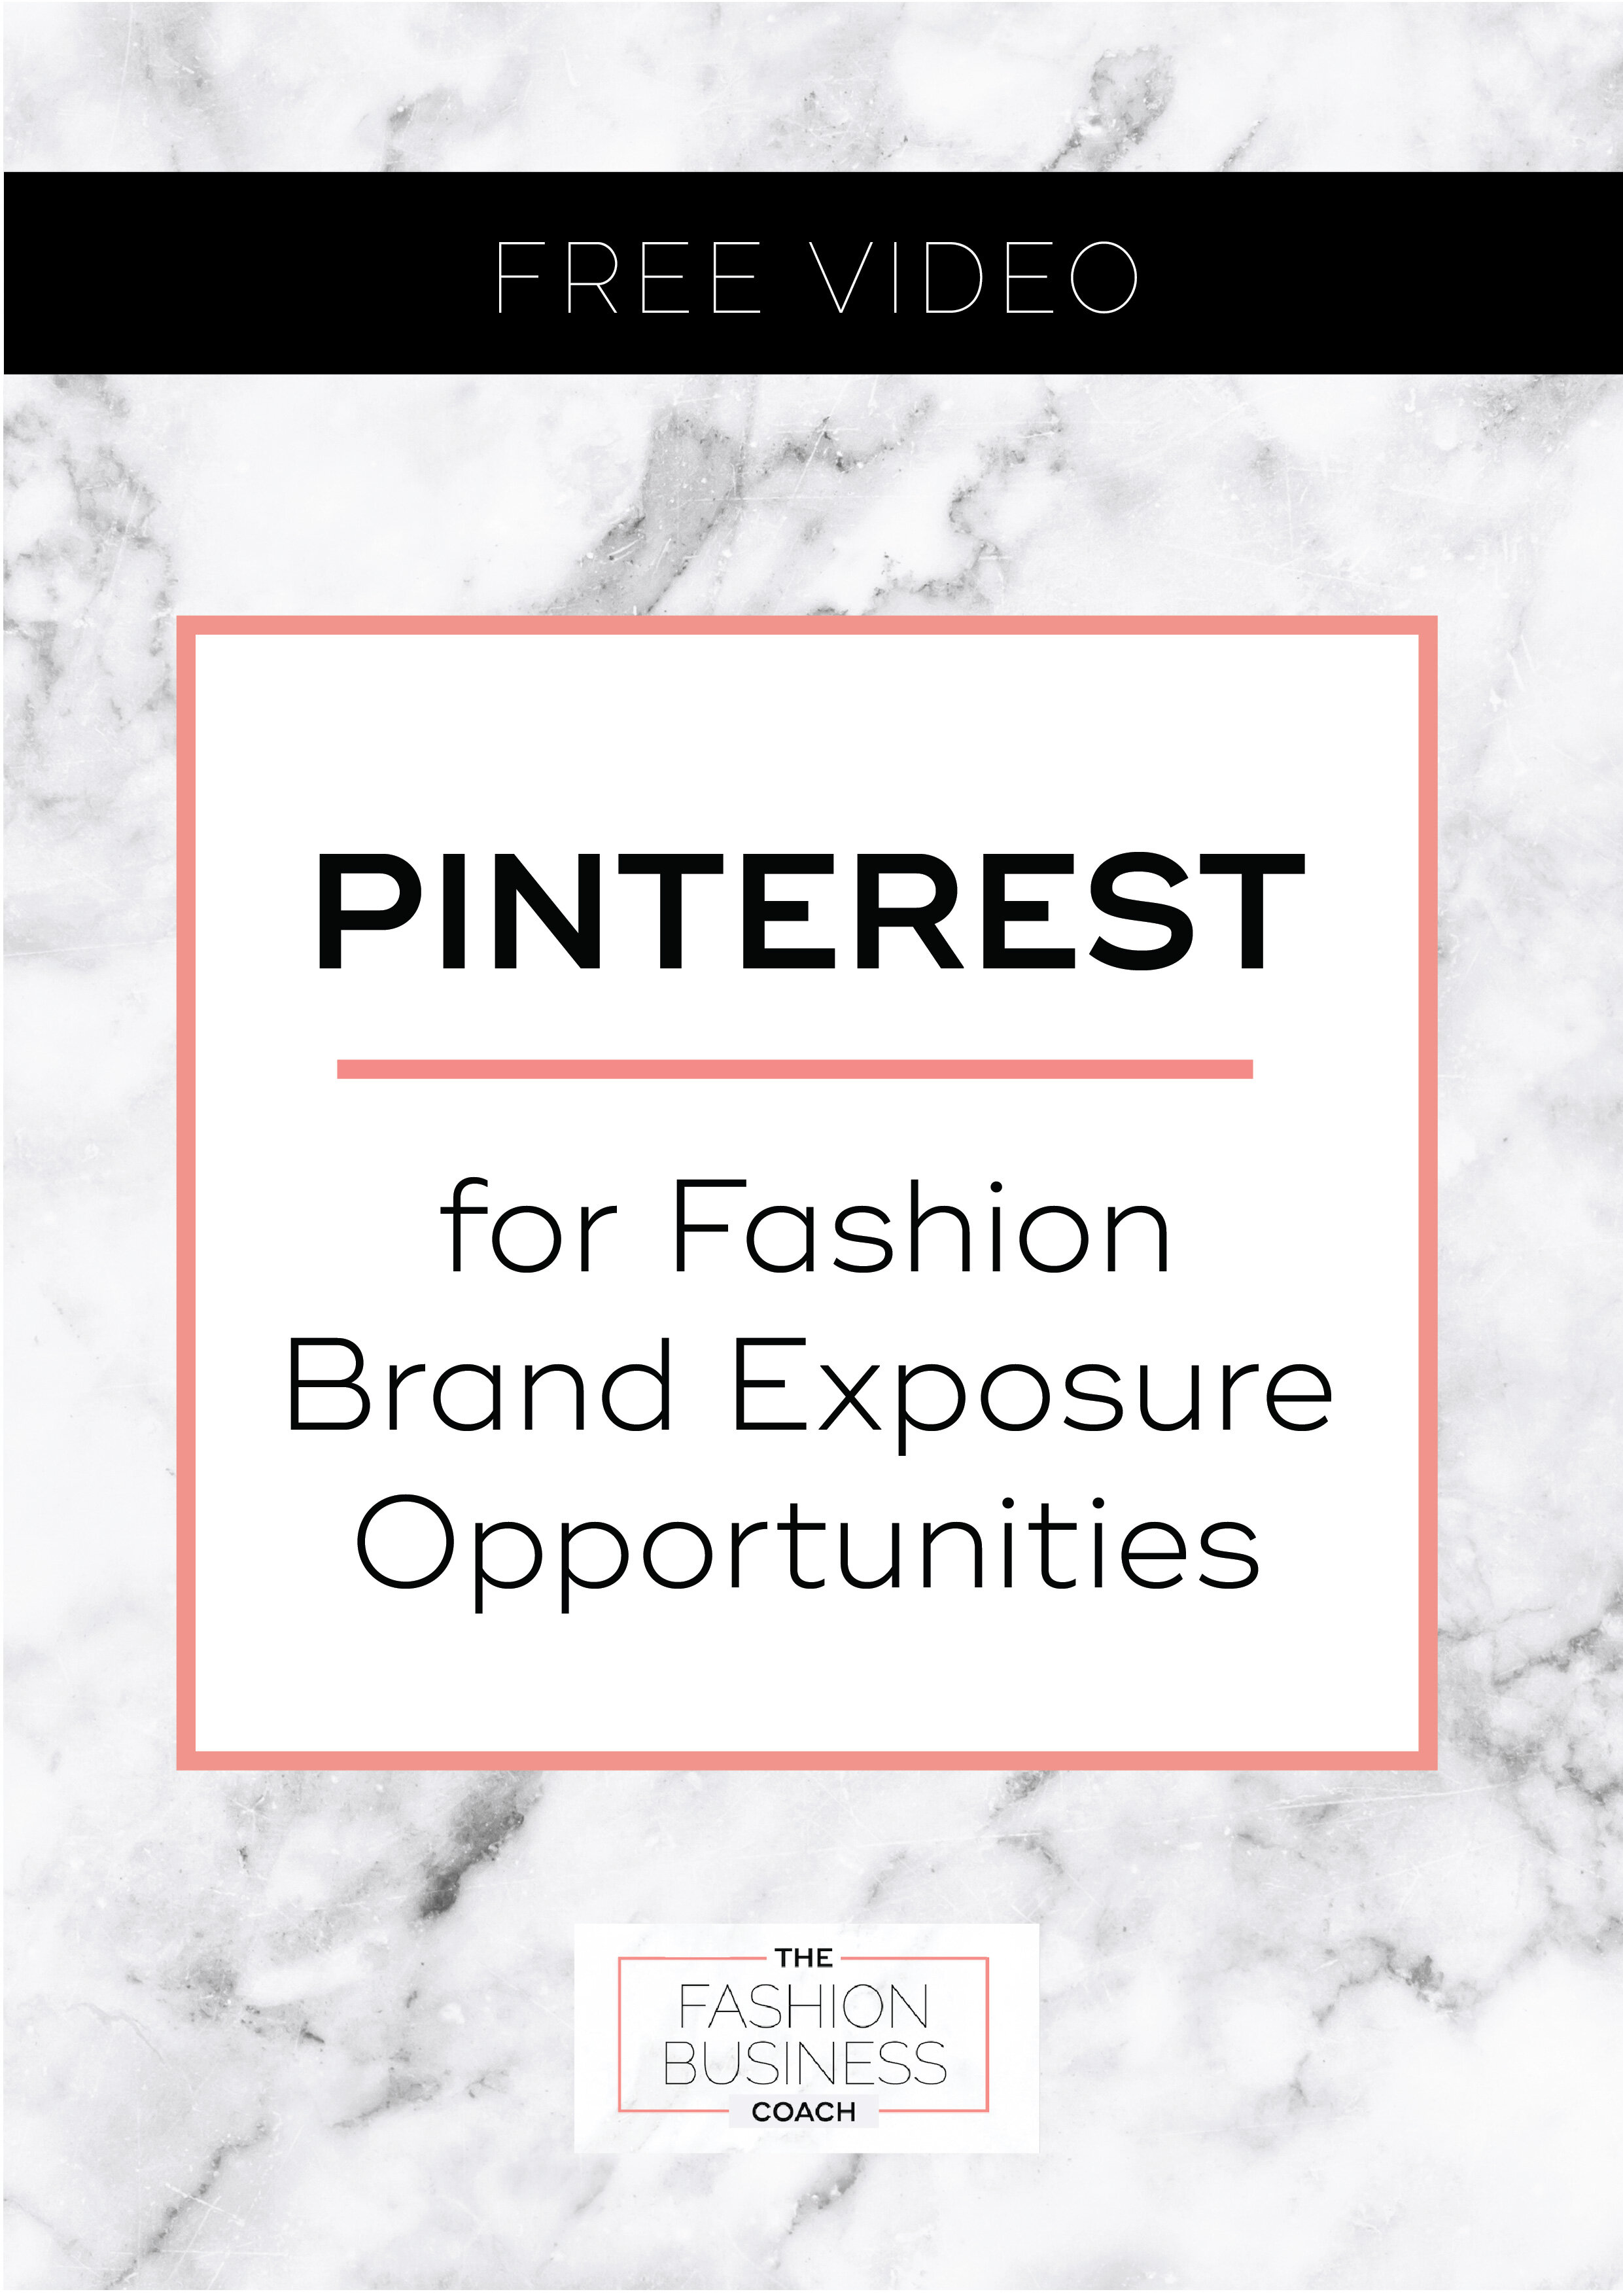 Pinterest for Fashion Brand Exposure Opportunities1.jpg